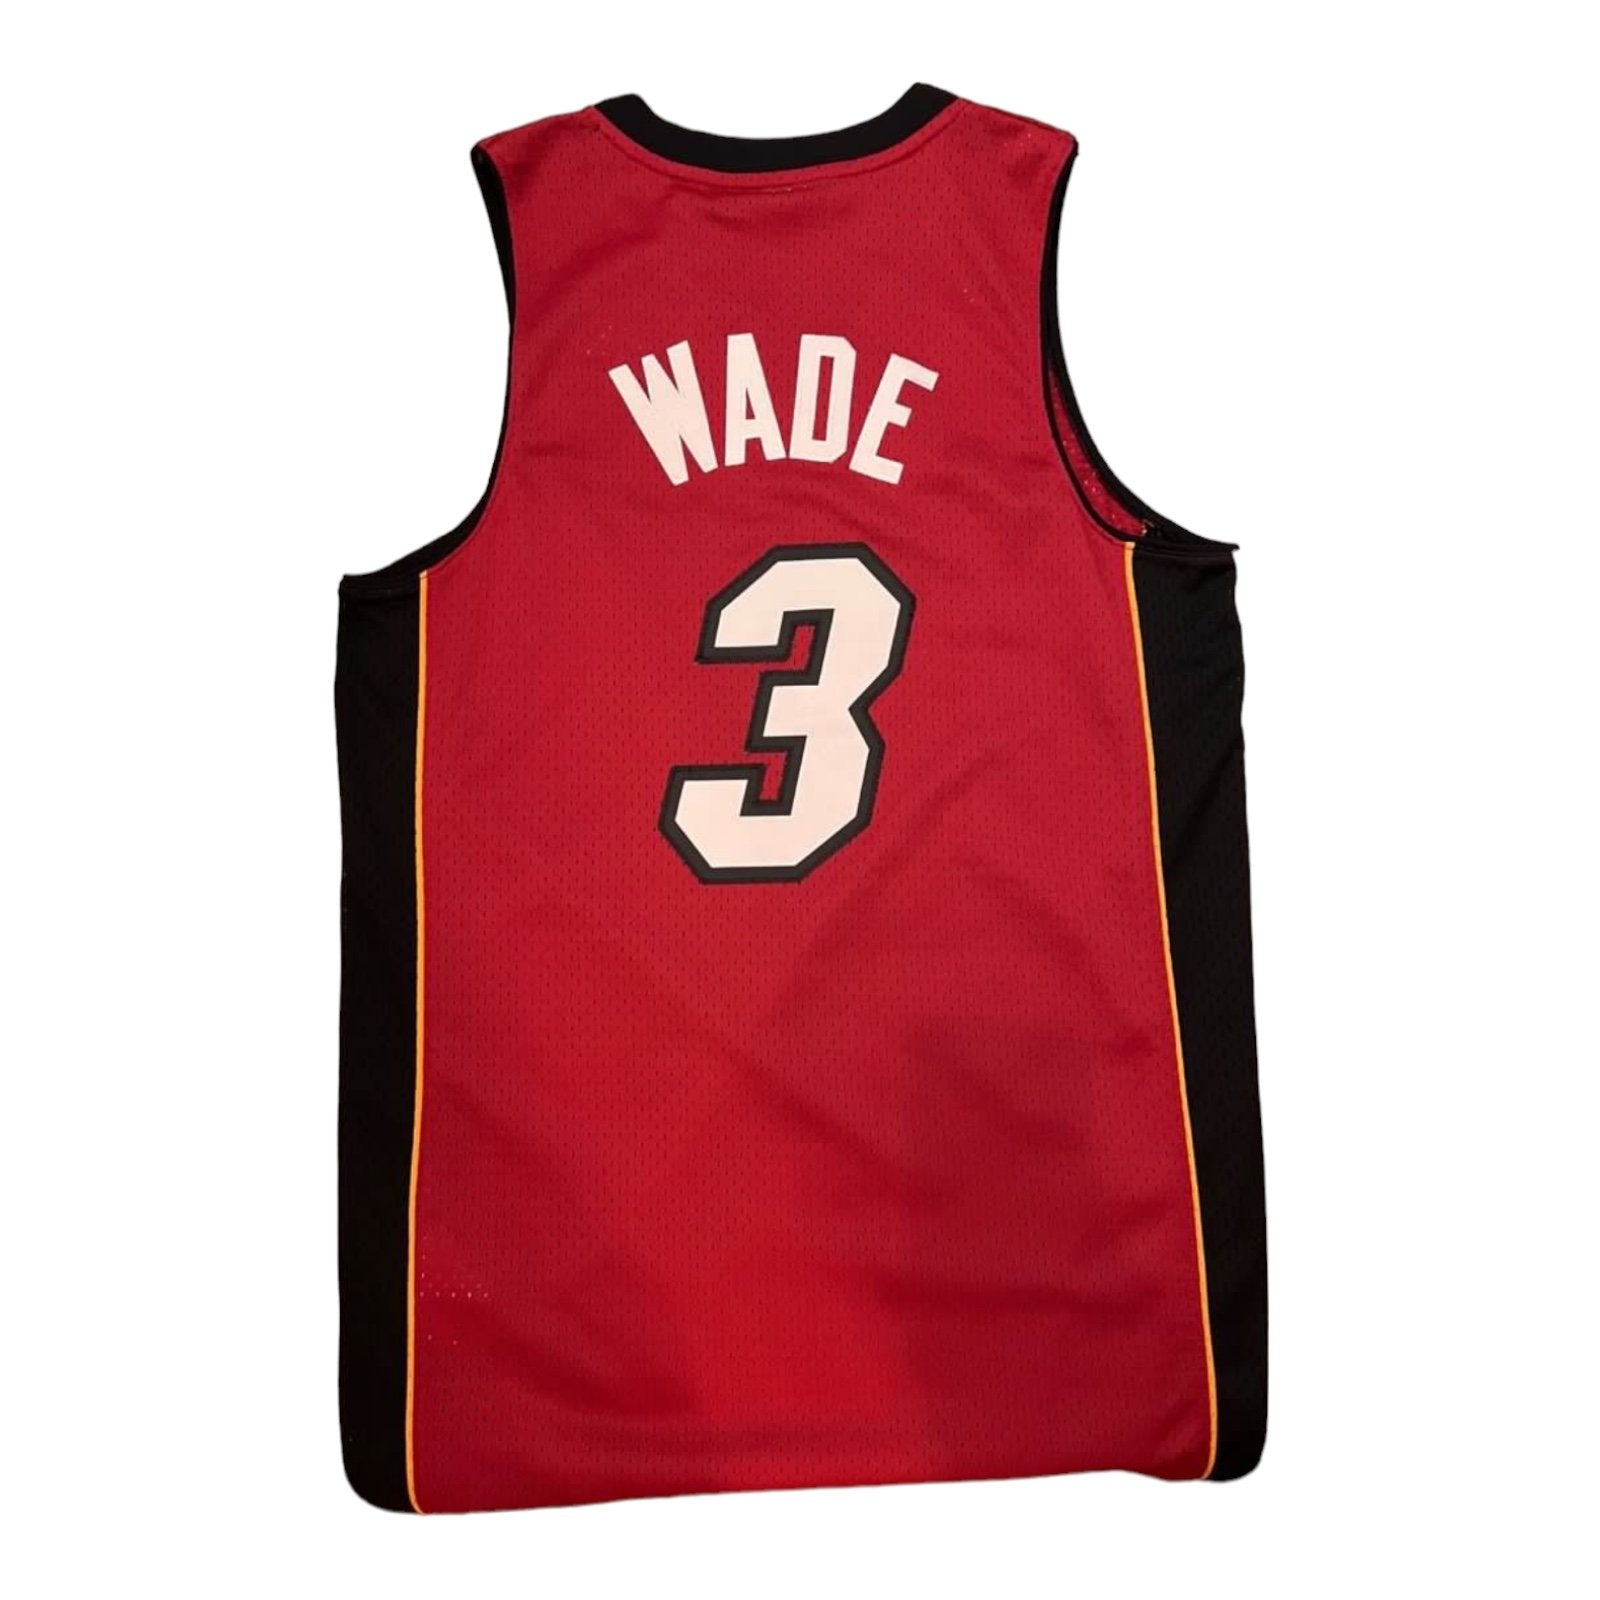 Dwyane Wade Miami Heat Alternate Adidas Swingman Jersey Red - Hoop Jersey Store